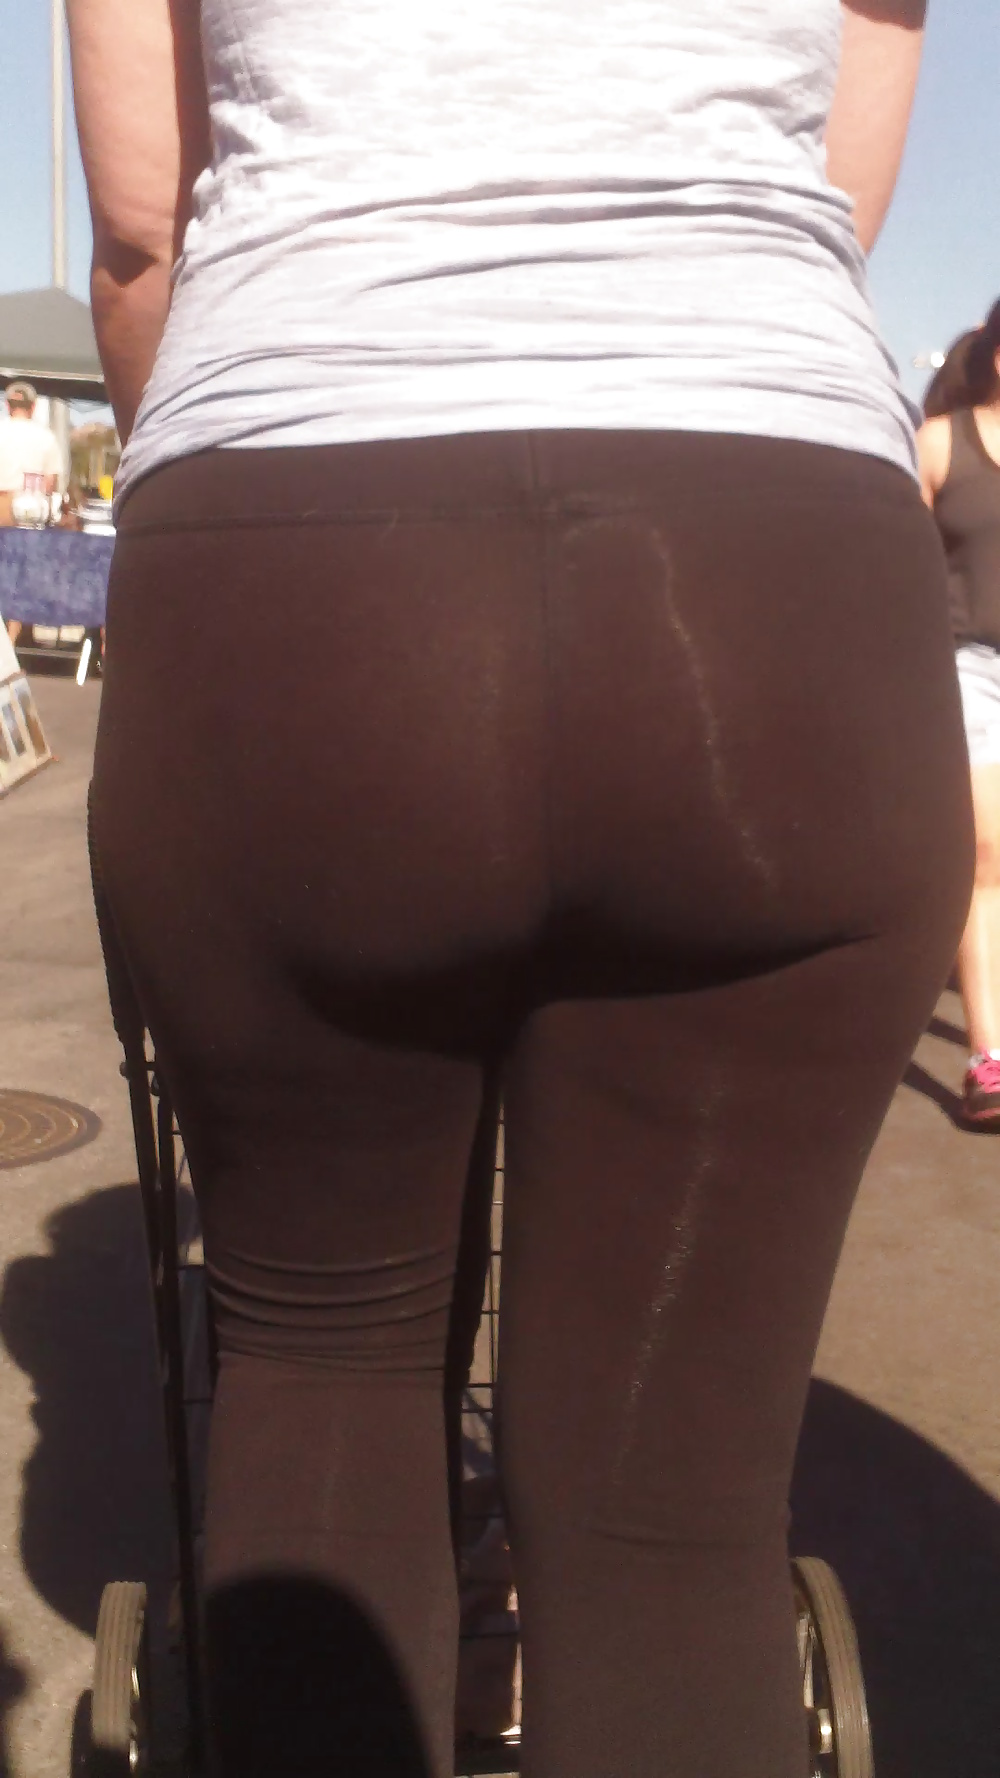 Big tight teen spandex butt & ass  #30602912